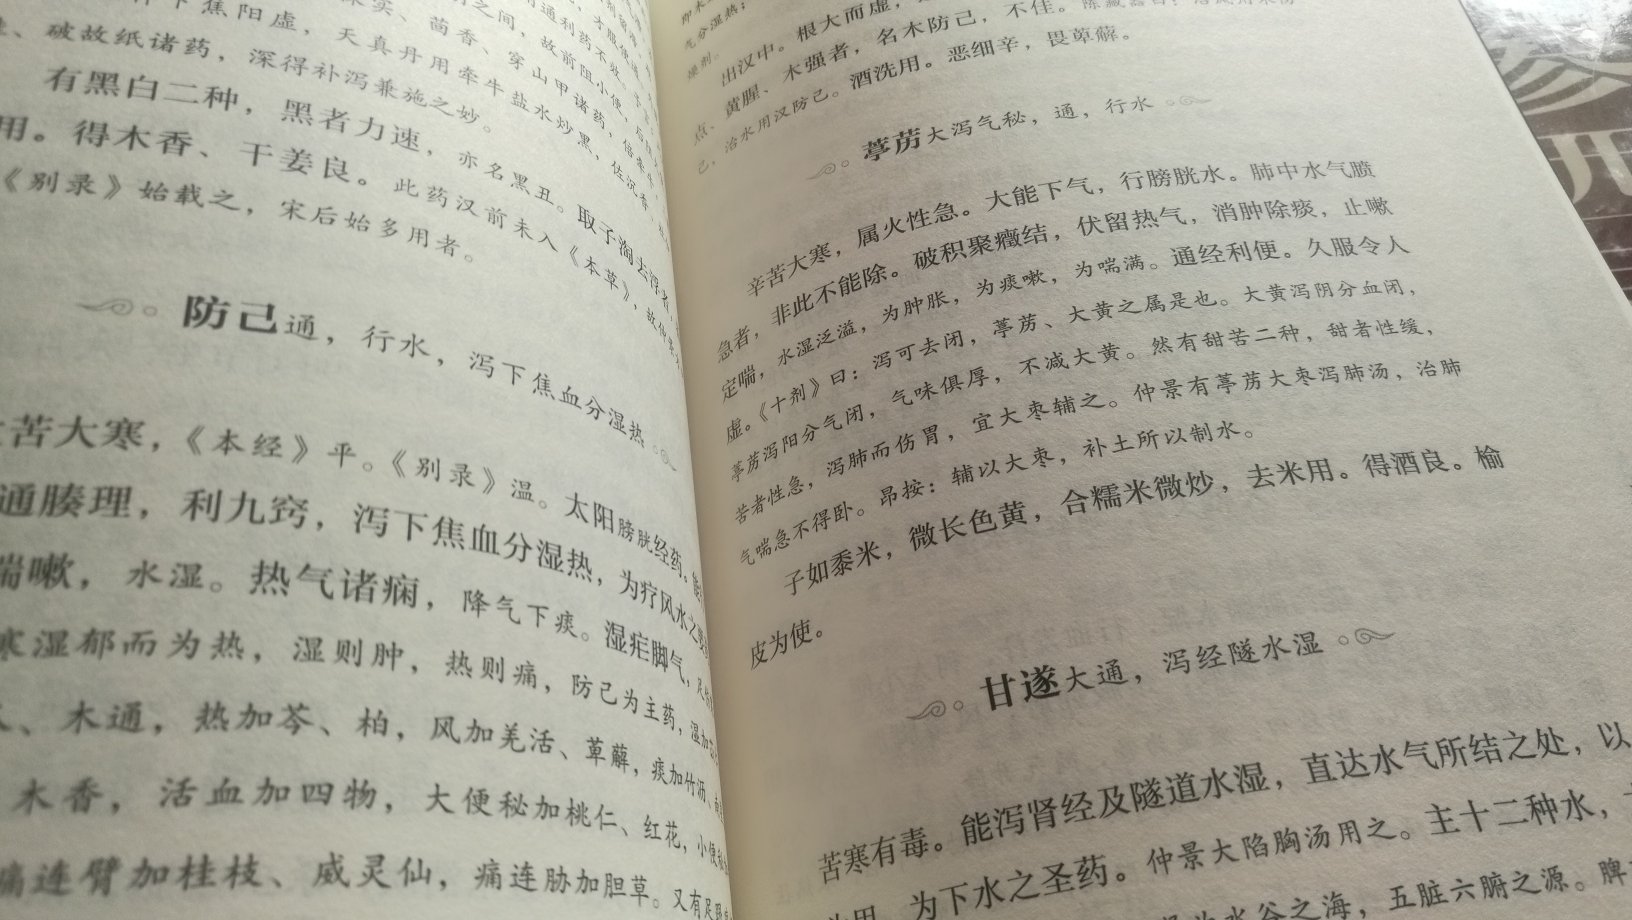 中医典籍，值得研究，明白就好。